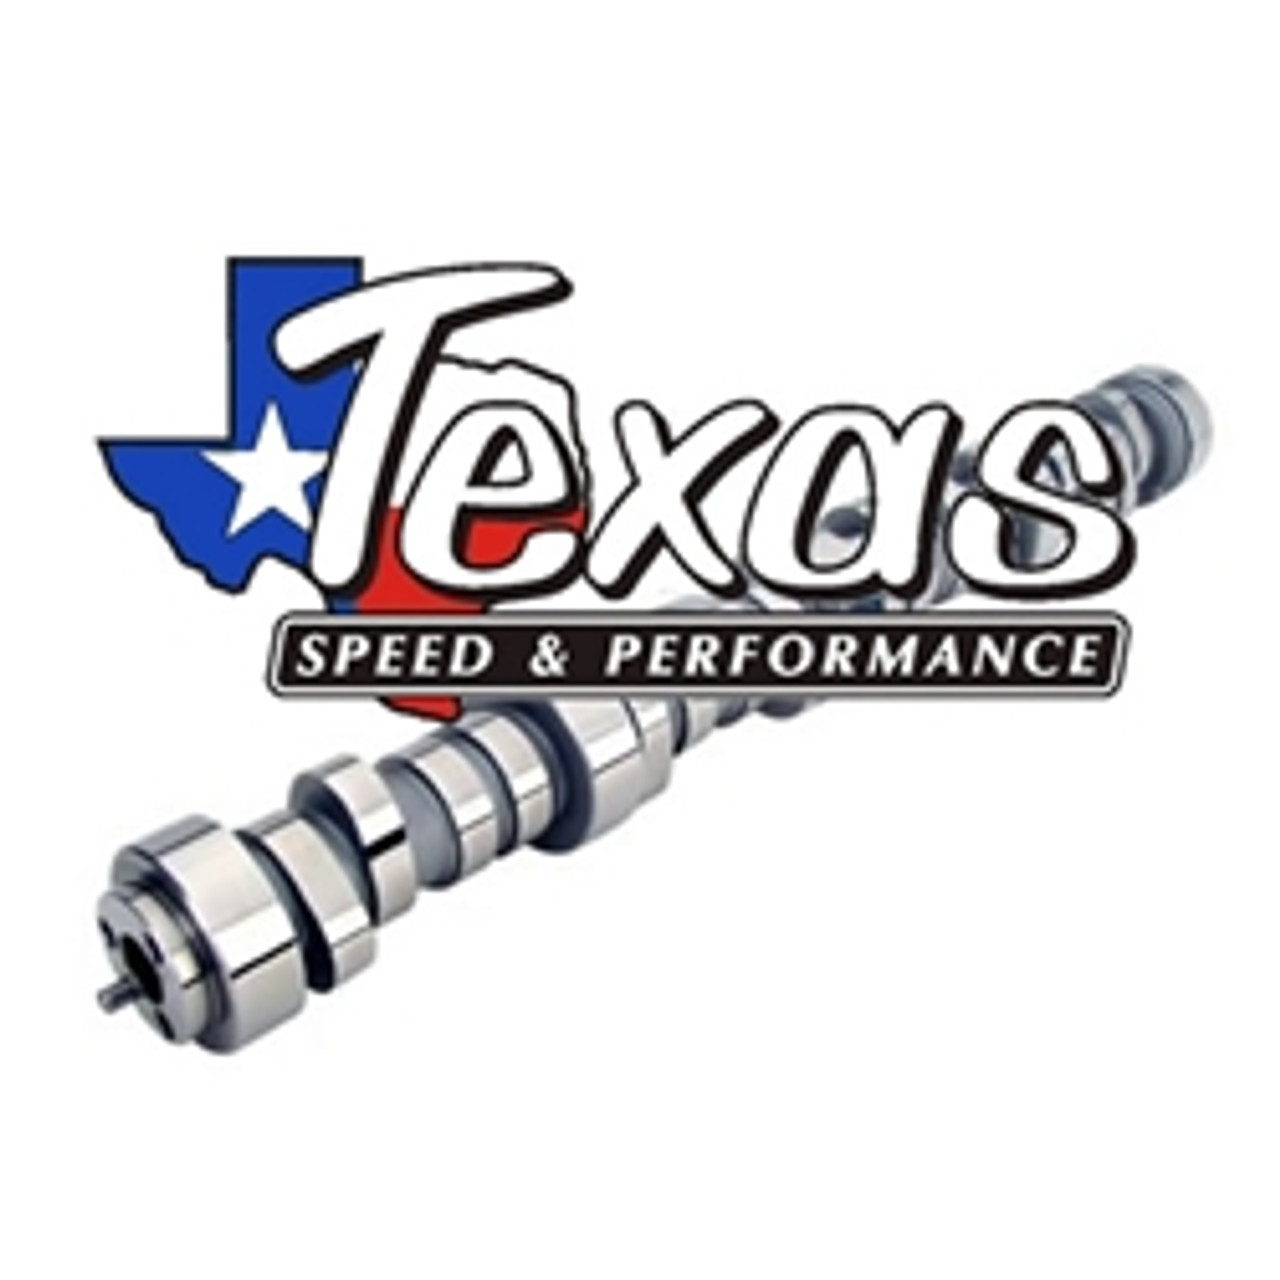 Texas Speed 230/236 Camshaft Package